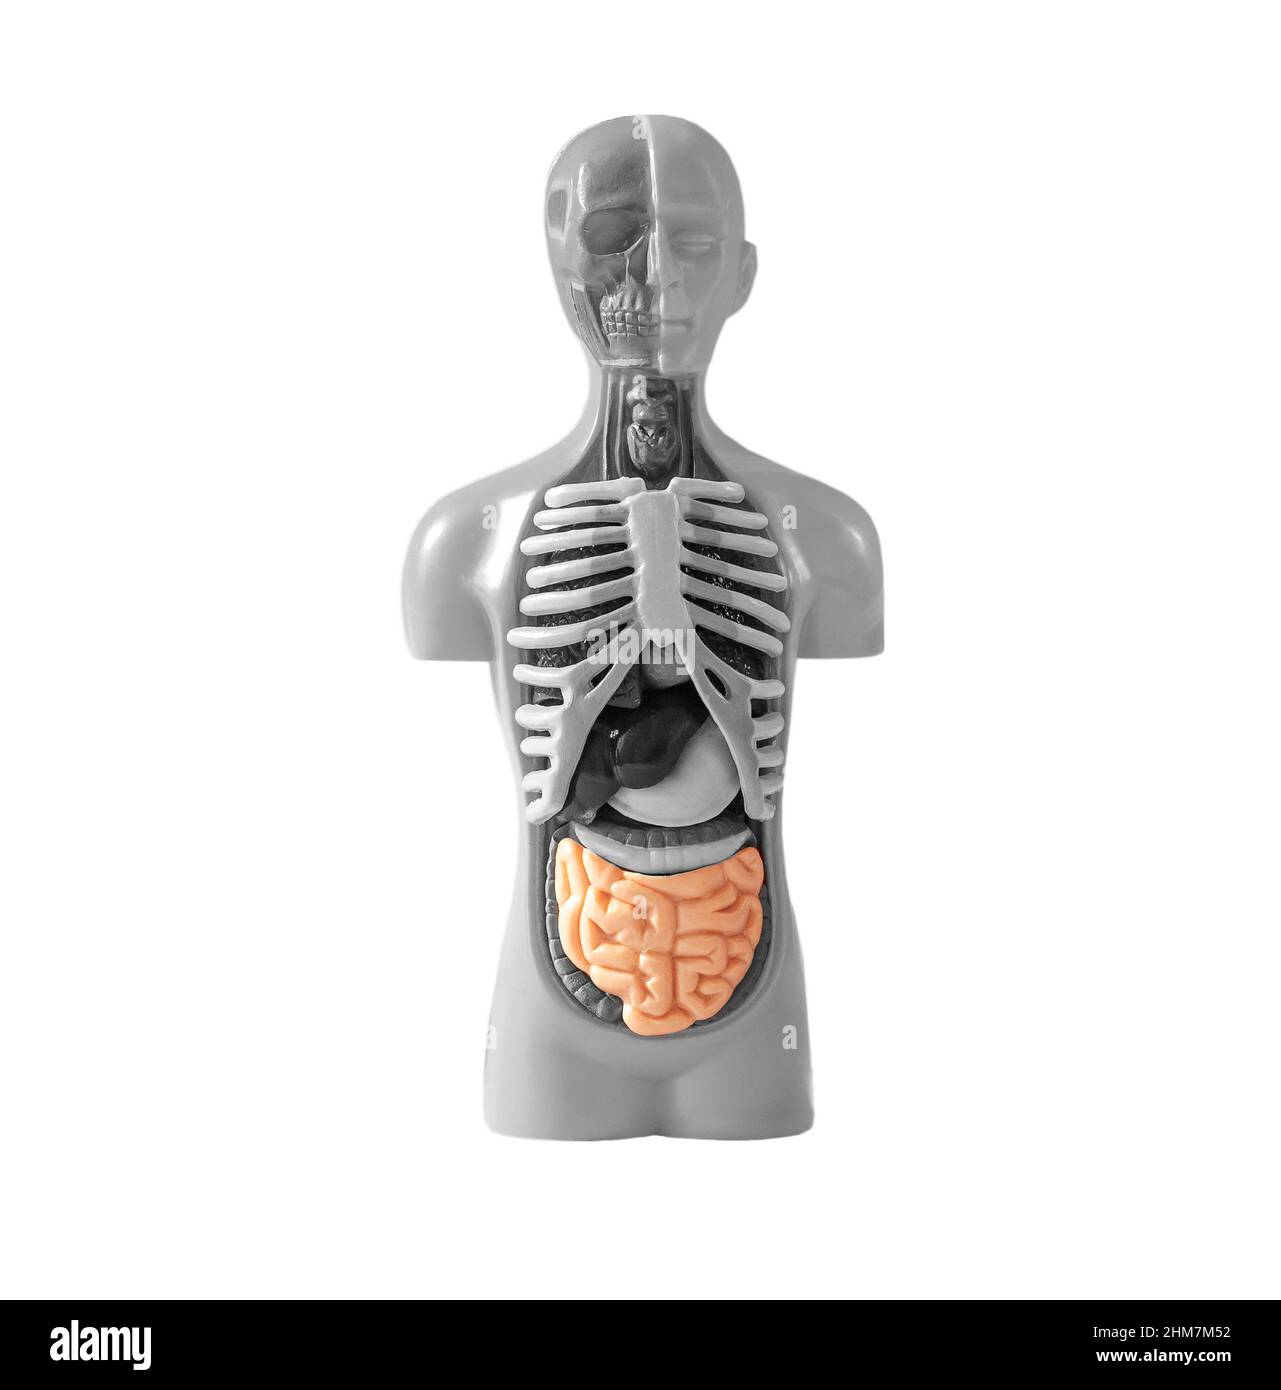 Intestino nel modello del corpo umano isolato su sfondo bianco. Studio del sistema digestivo umano. Concetto di educazione medica. Foto di alta qualità Foto Stock